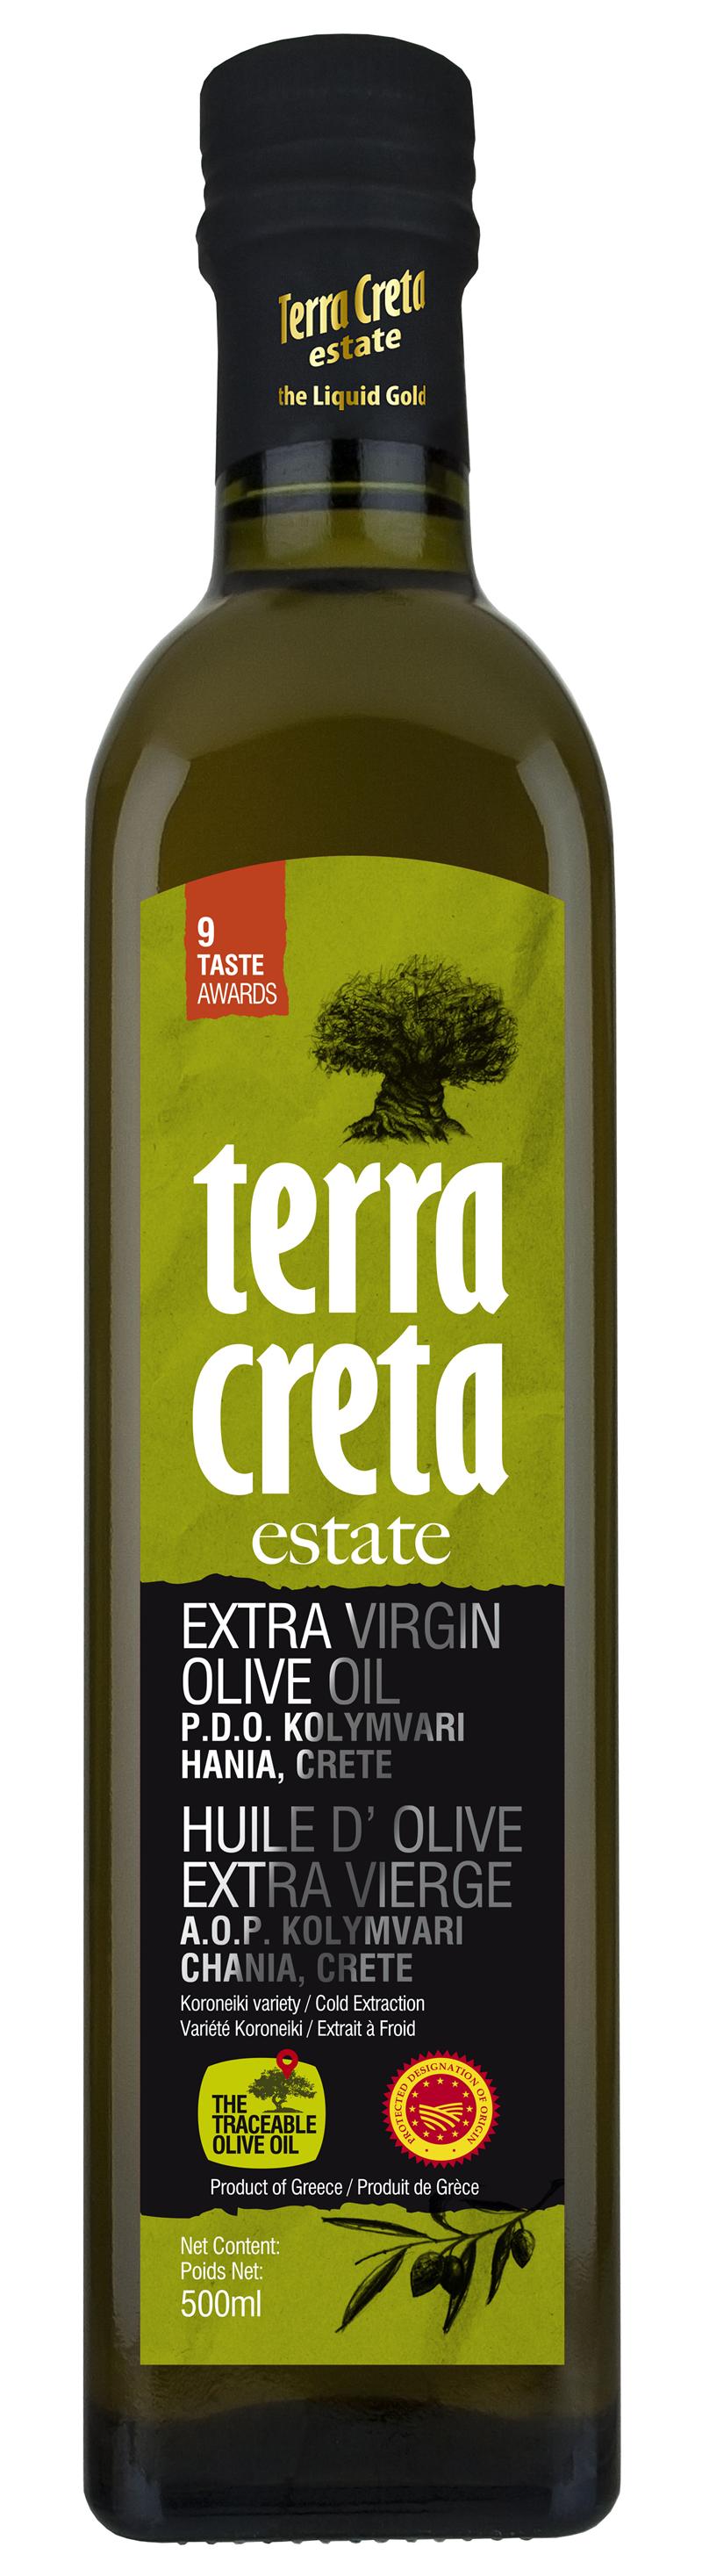 Terra Creta Ekstra-neitsytoliiviöljy, PDO, 500 ml